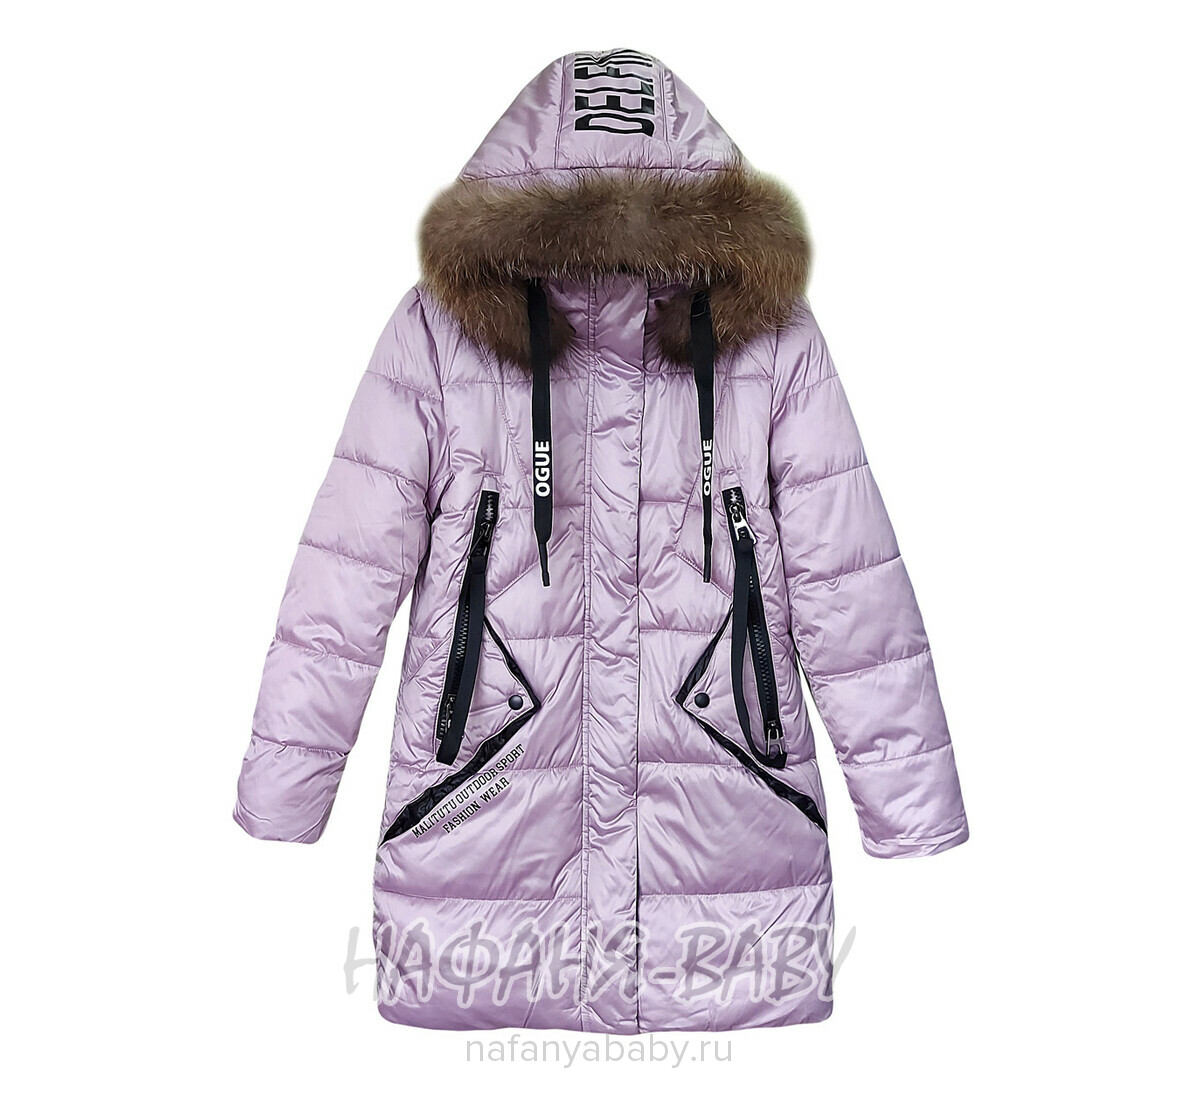 Зимнее подростковое пальто DELFIN-FREE арт: 2217, 10-15 лет, оптом Китай (Пекин)